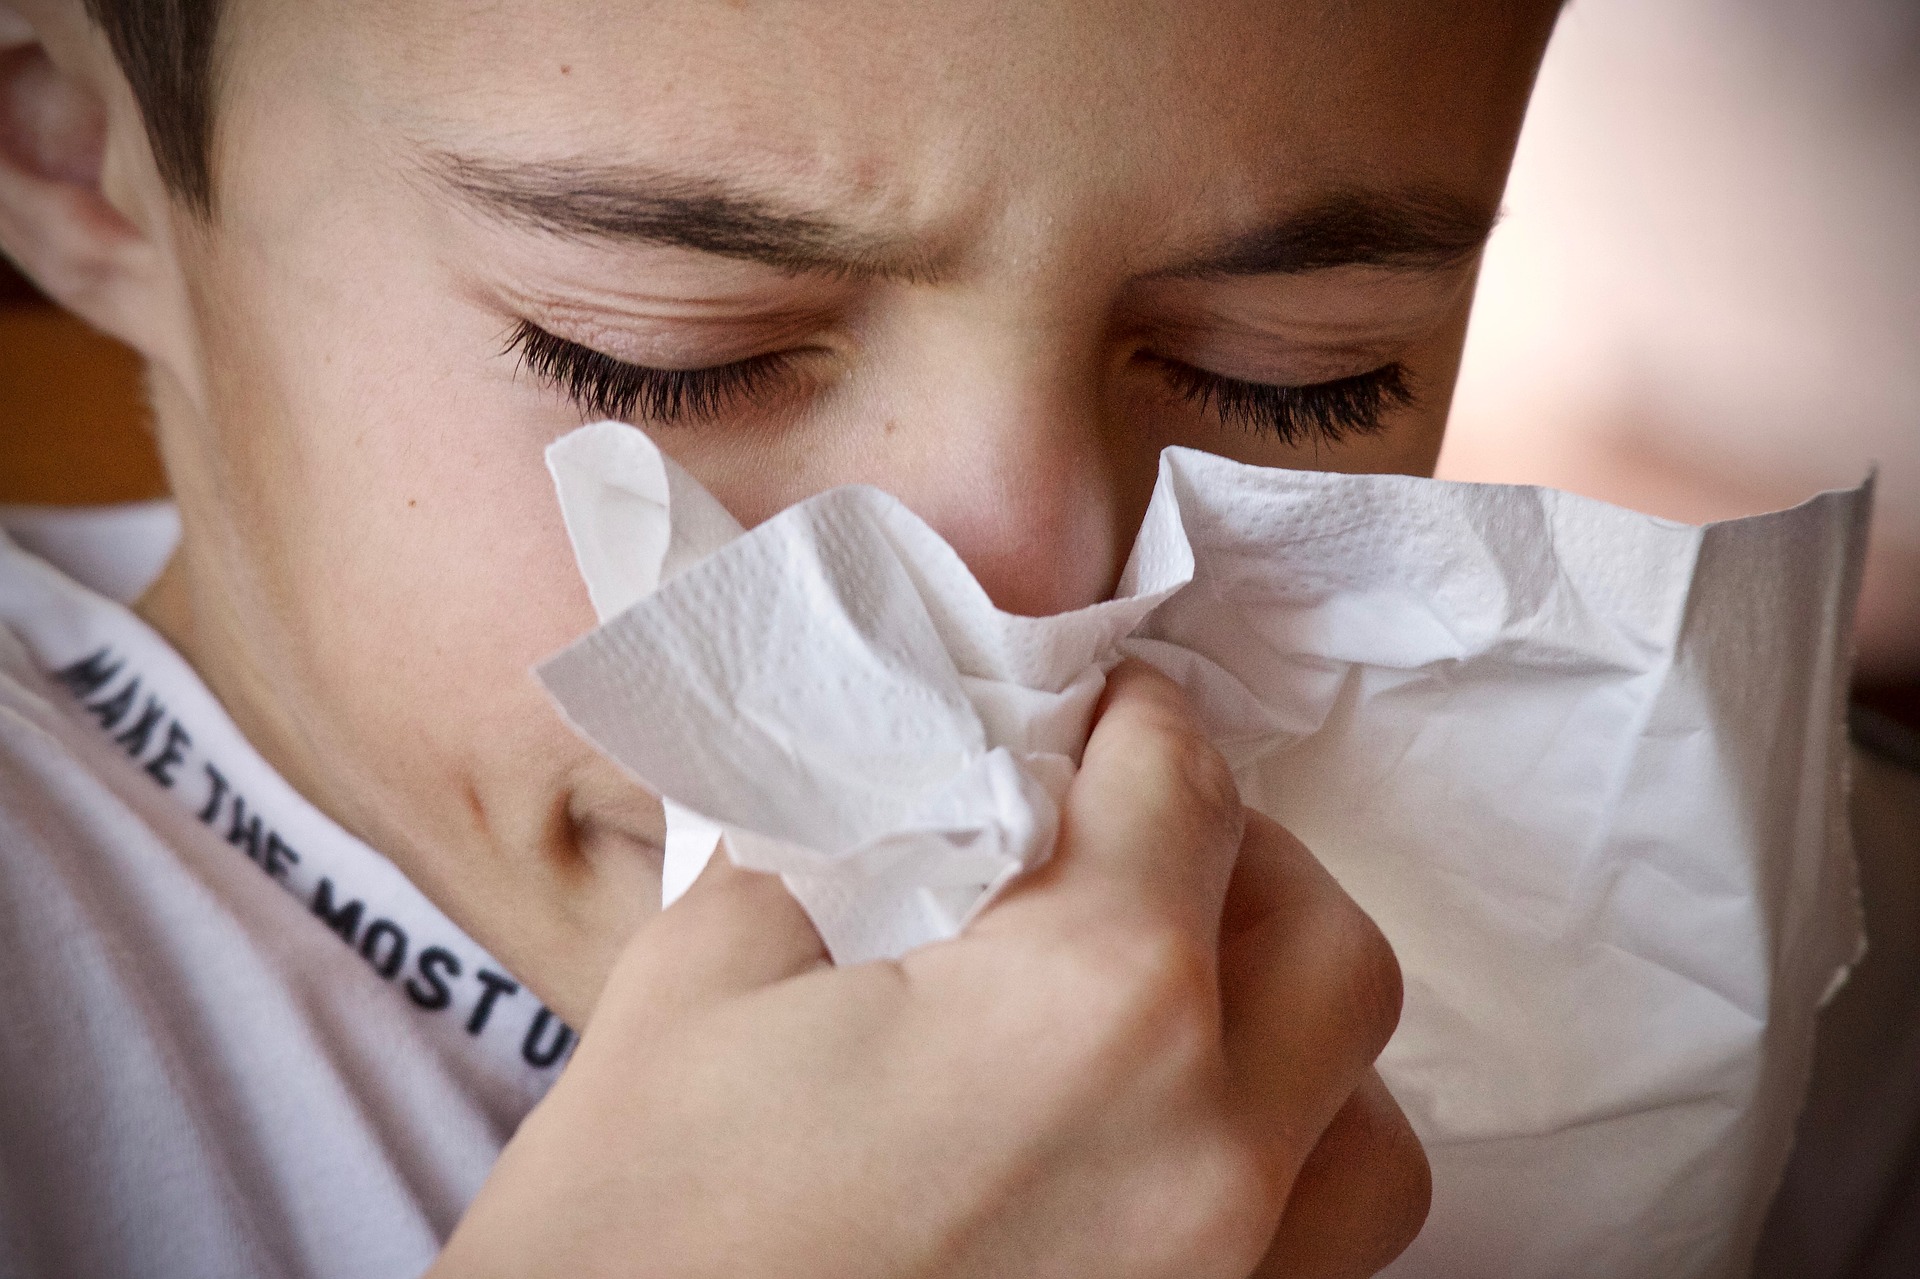 Zu den Symptomen, die durch eine Duftempfindlichkeit verursacht werden können, gehören: